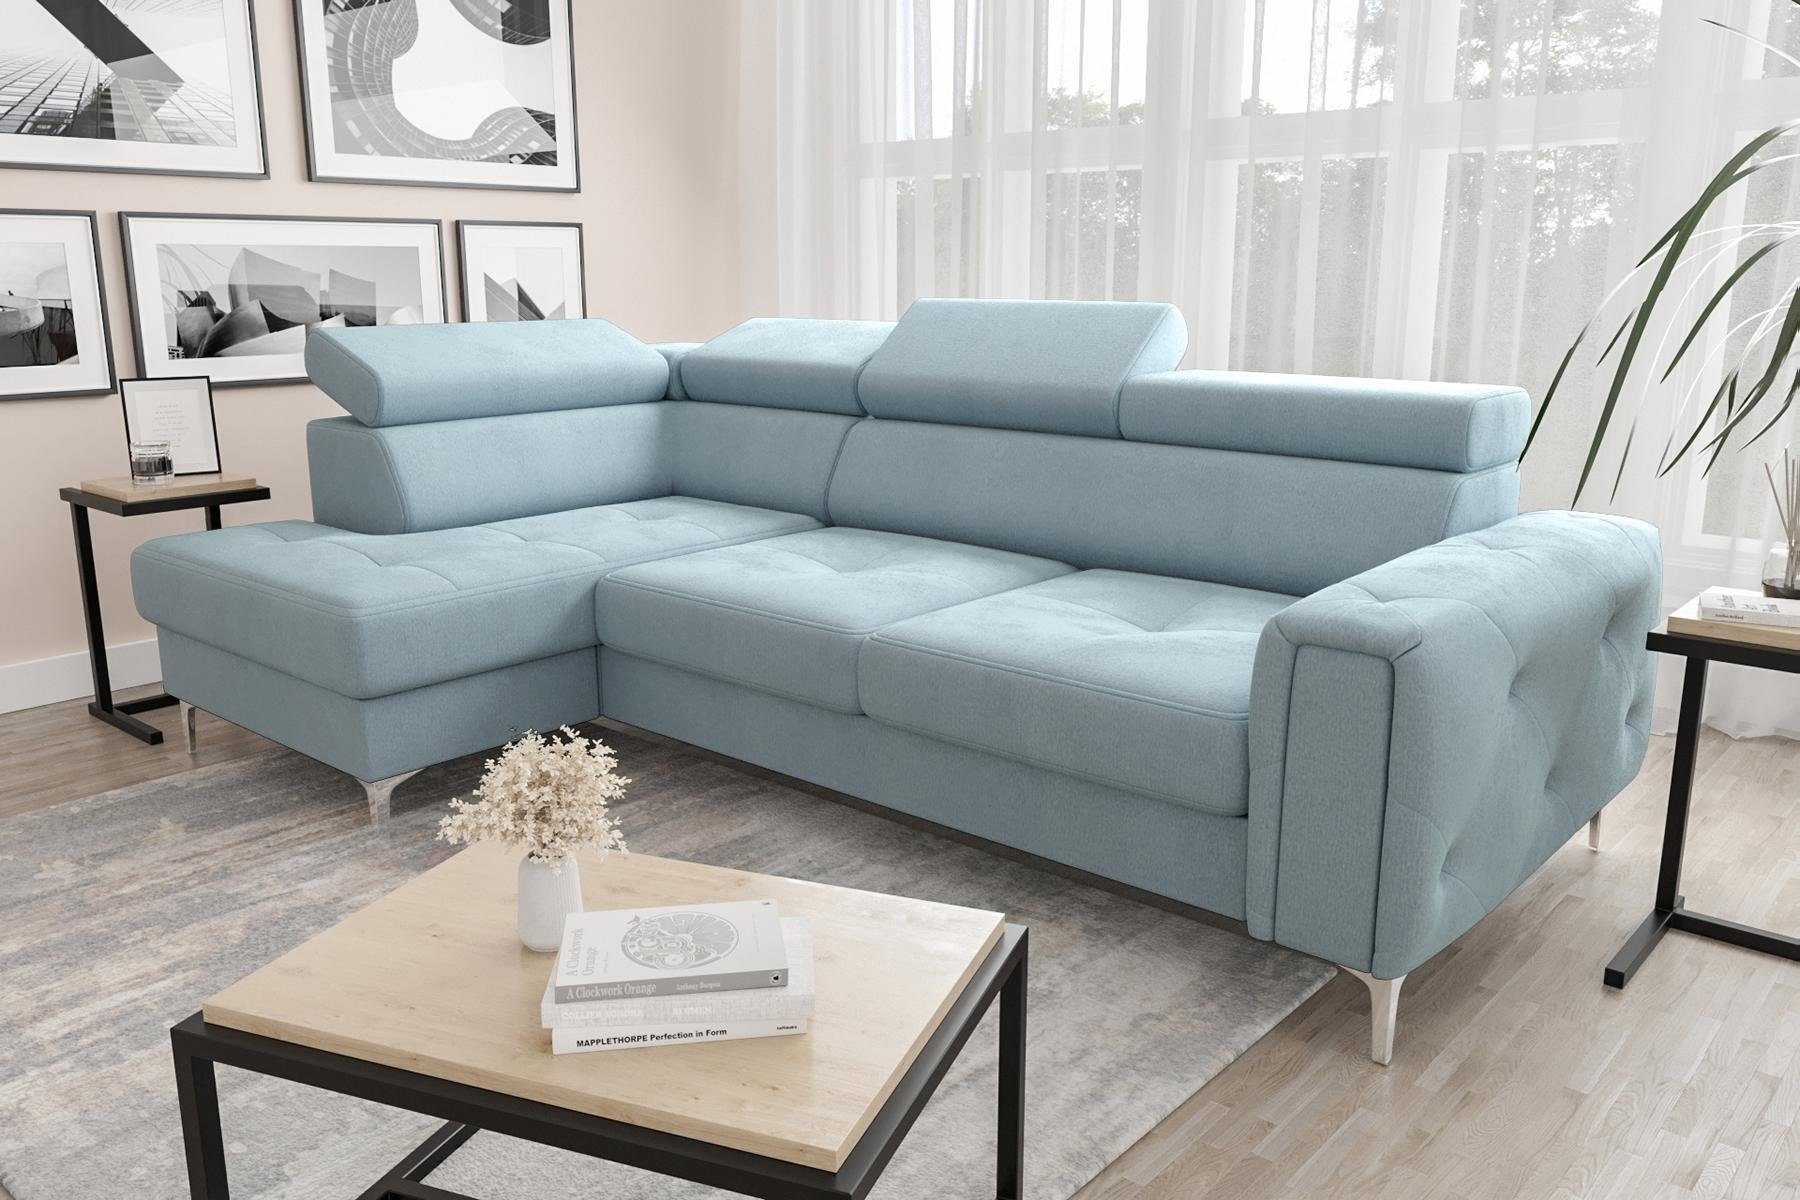 JVmoebel Ecksofa Ledersofa L-Form Couch Wohnzimmer Ecke Design, Made in Europe Blau | Ecksofas